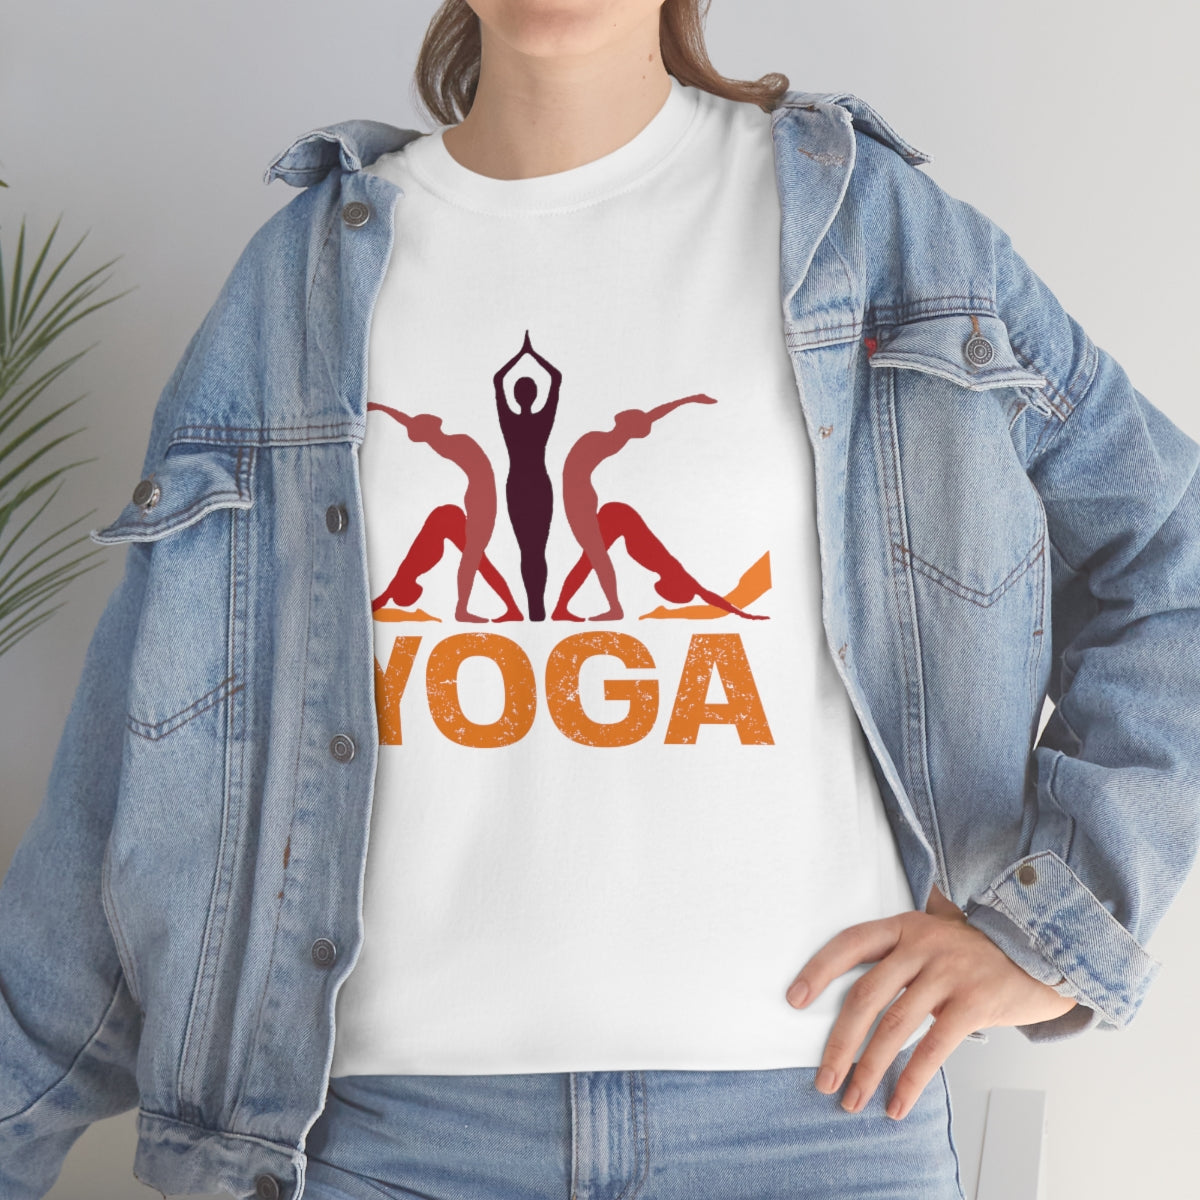 Yoga Poses Unisex Heavy Cotton Tee